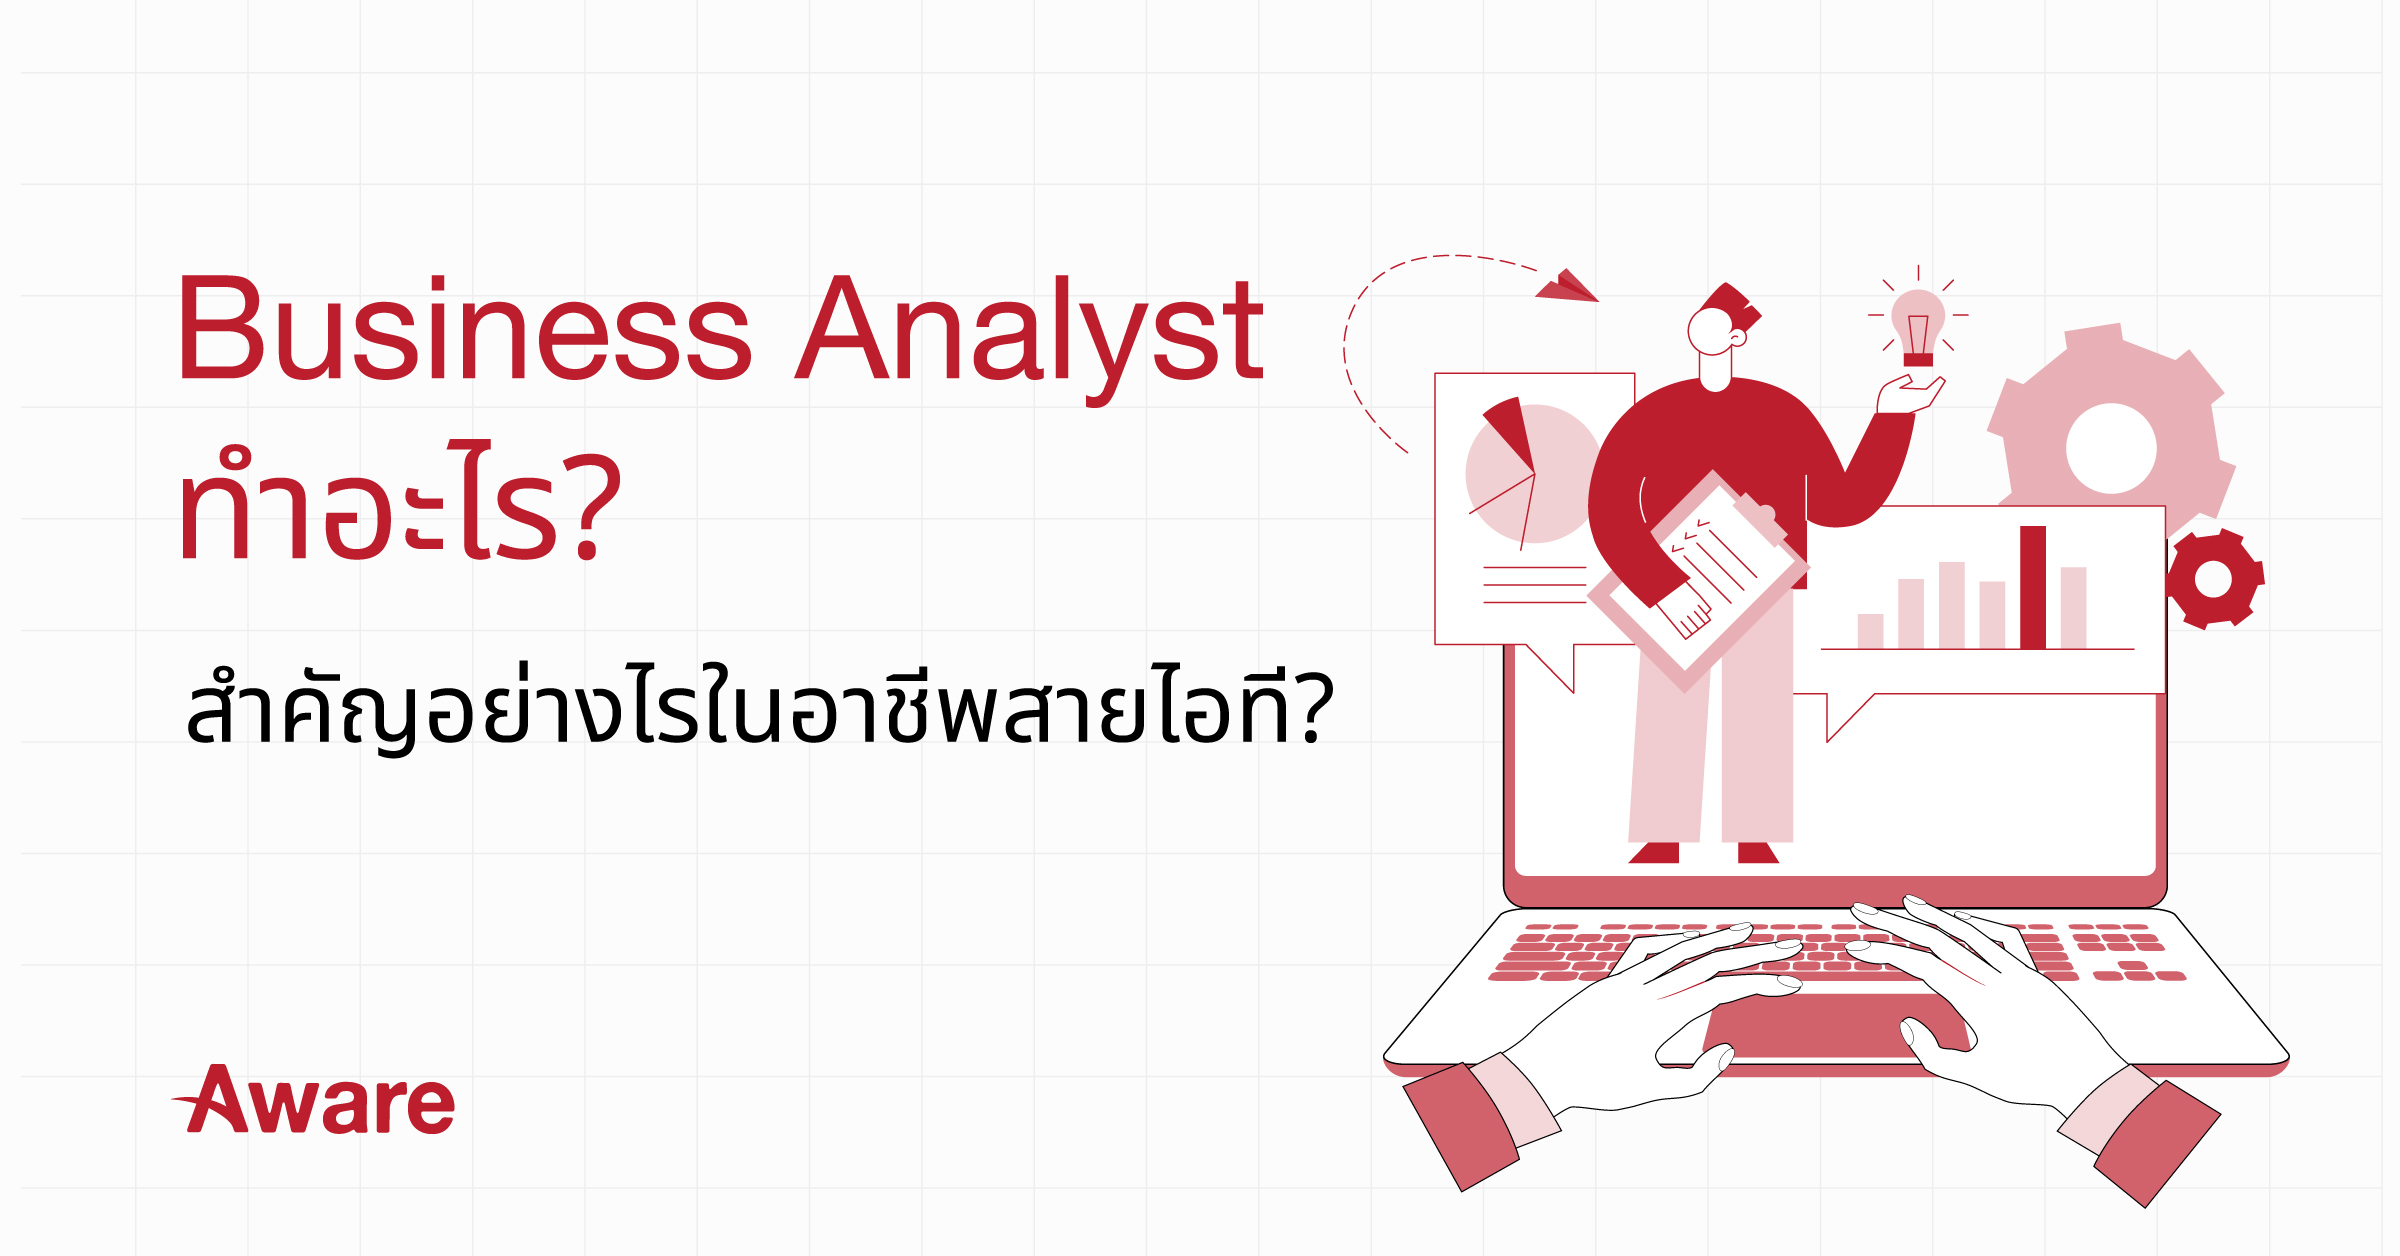 Business Analyst ทำอะไร? สำคัญอย่างไรในอาชีพสายไอที?